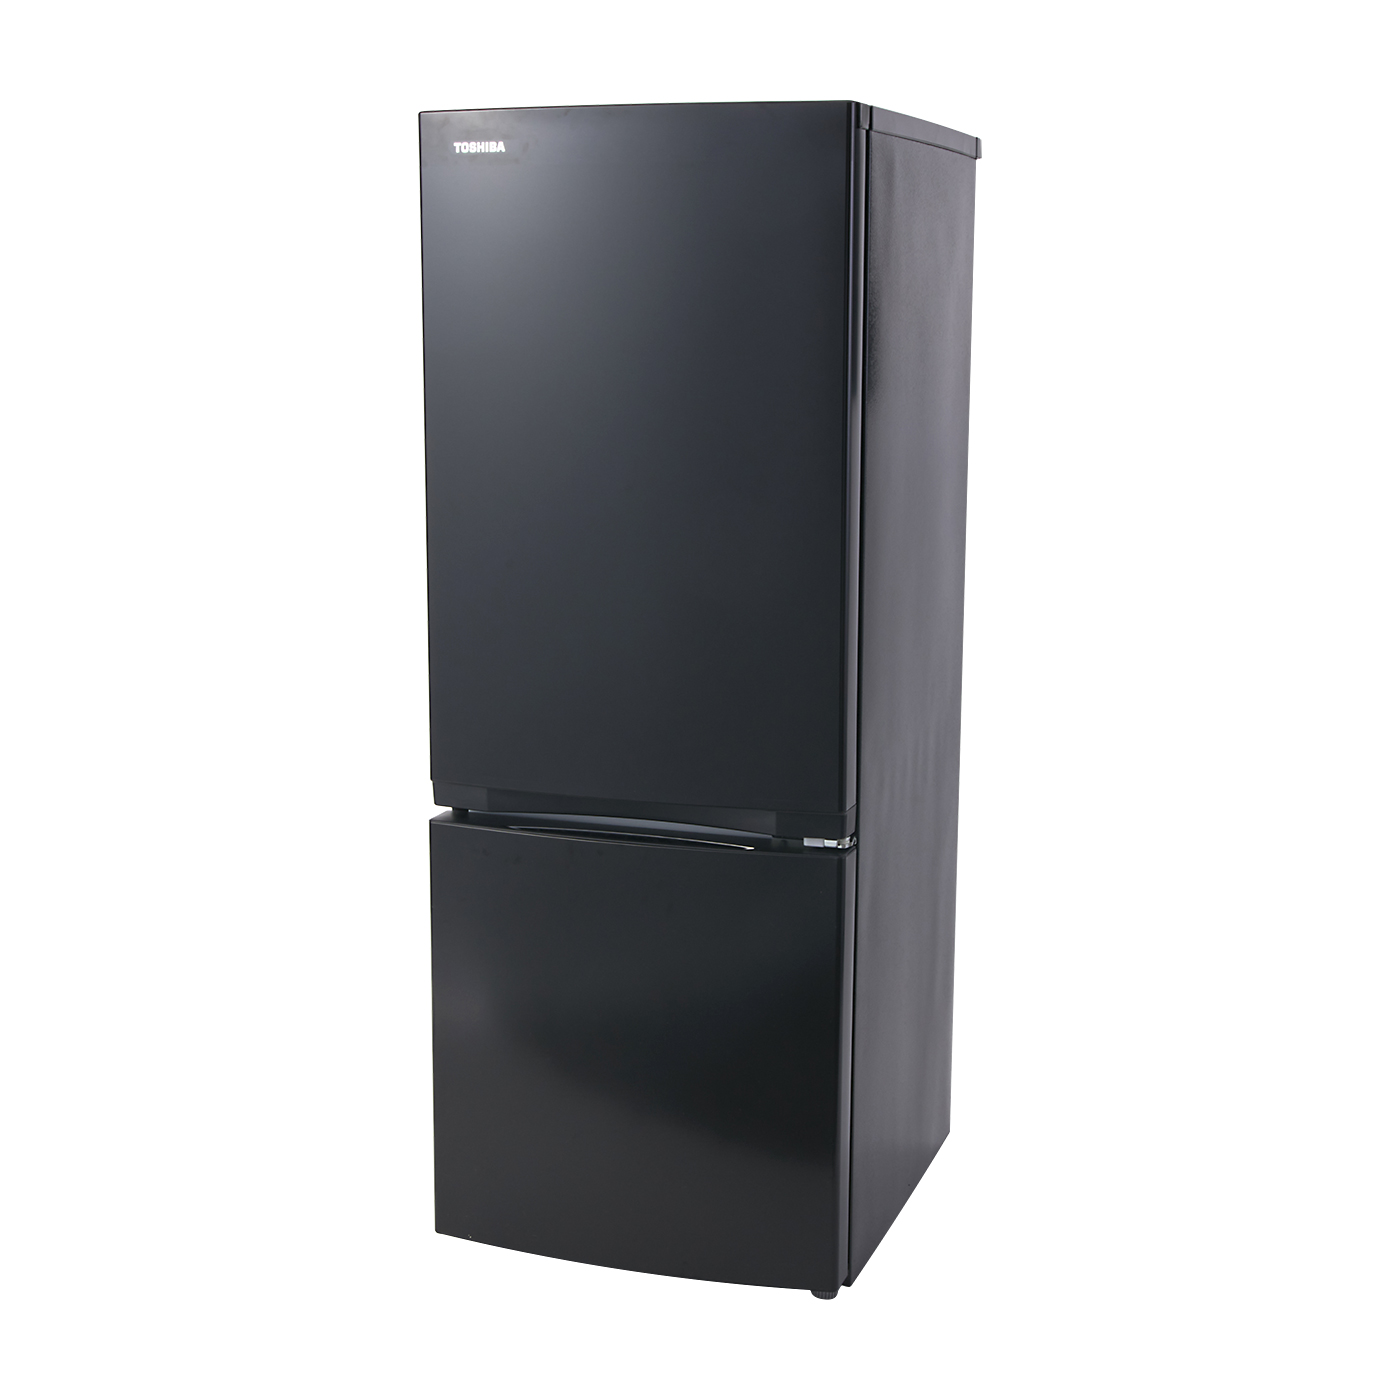 2023年】幅55cm以下の冷蔵庫のおすすめ人気ランキング93選 mybest